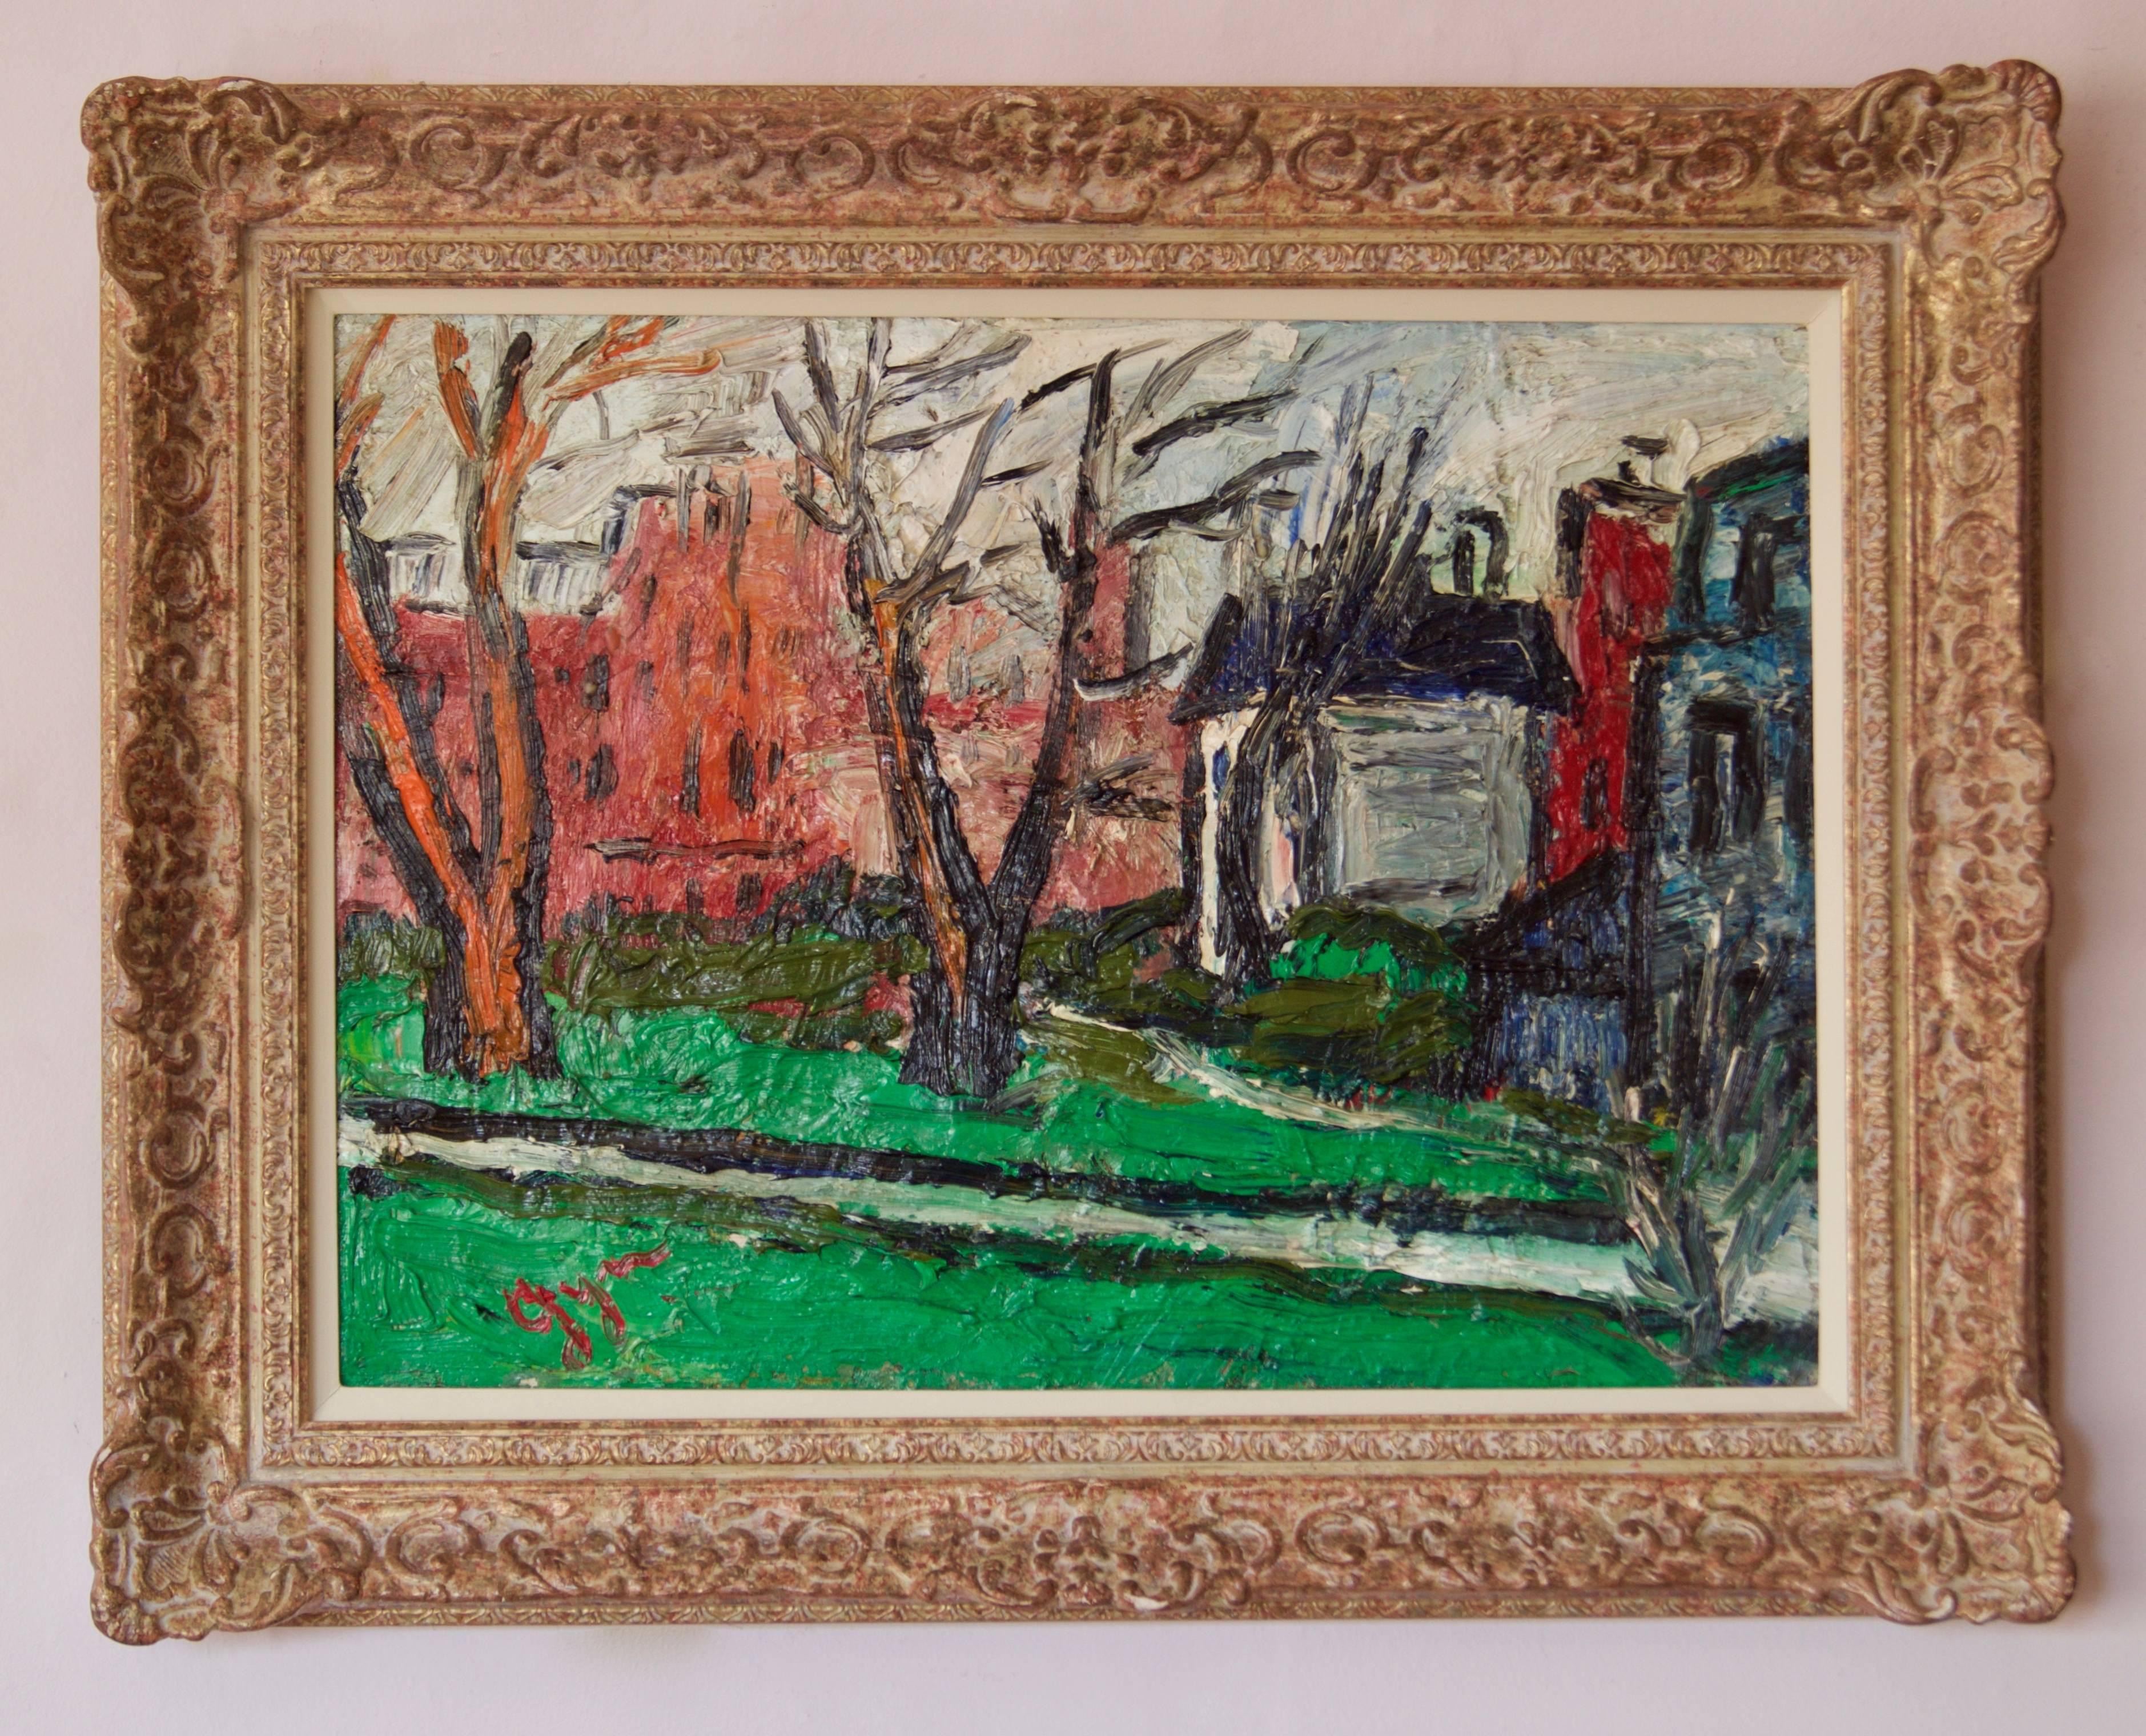 Winters Day in Kensington - Impressionistisches Ölgemälde von Gwen Collins, frühes 20. Jahrhundert – Painting von Gwendolyn Collins